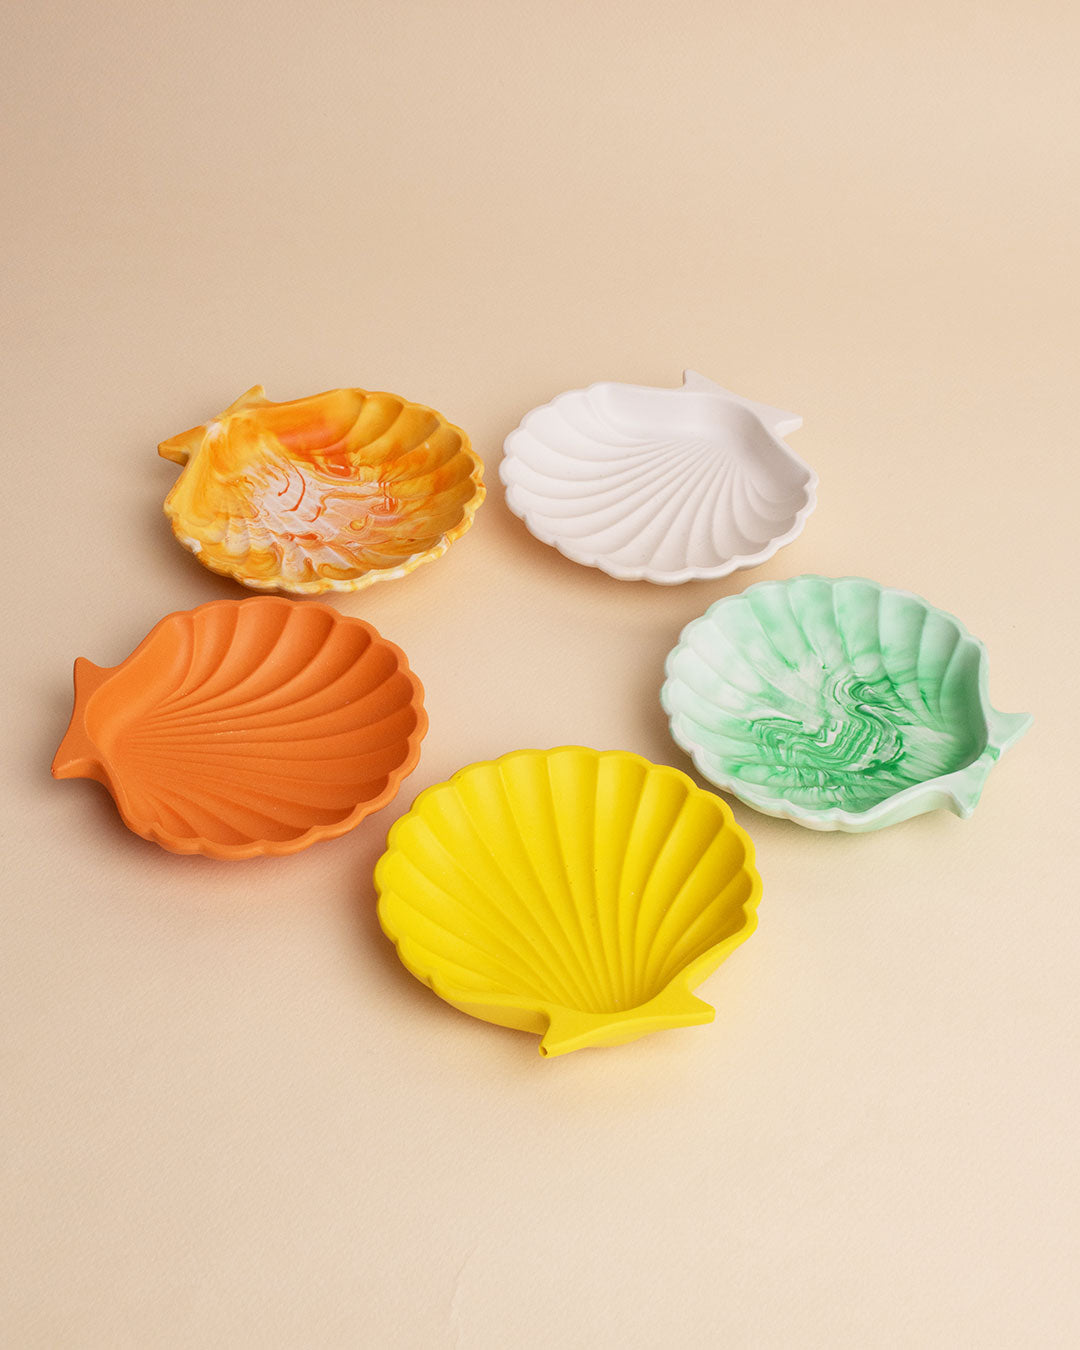 Shell tray pottery Atelier Madha